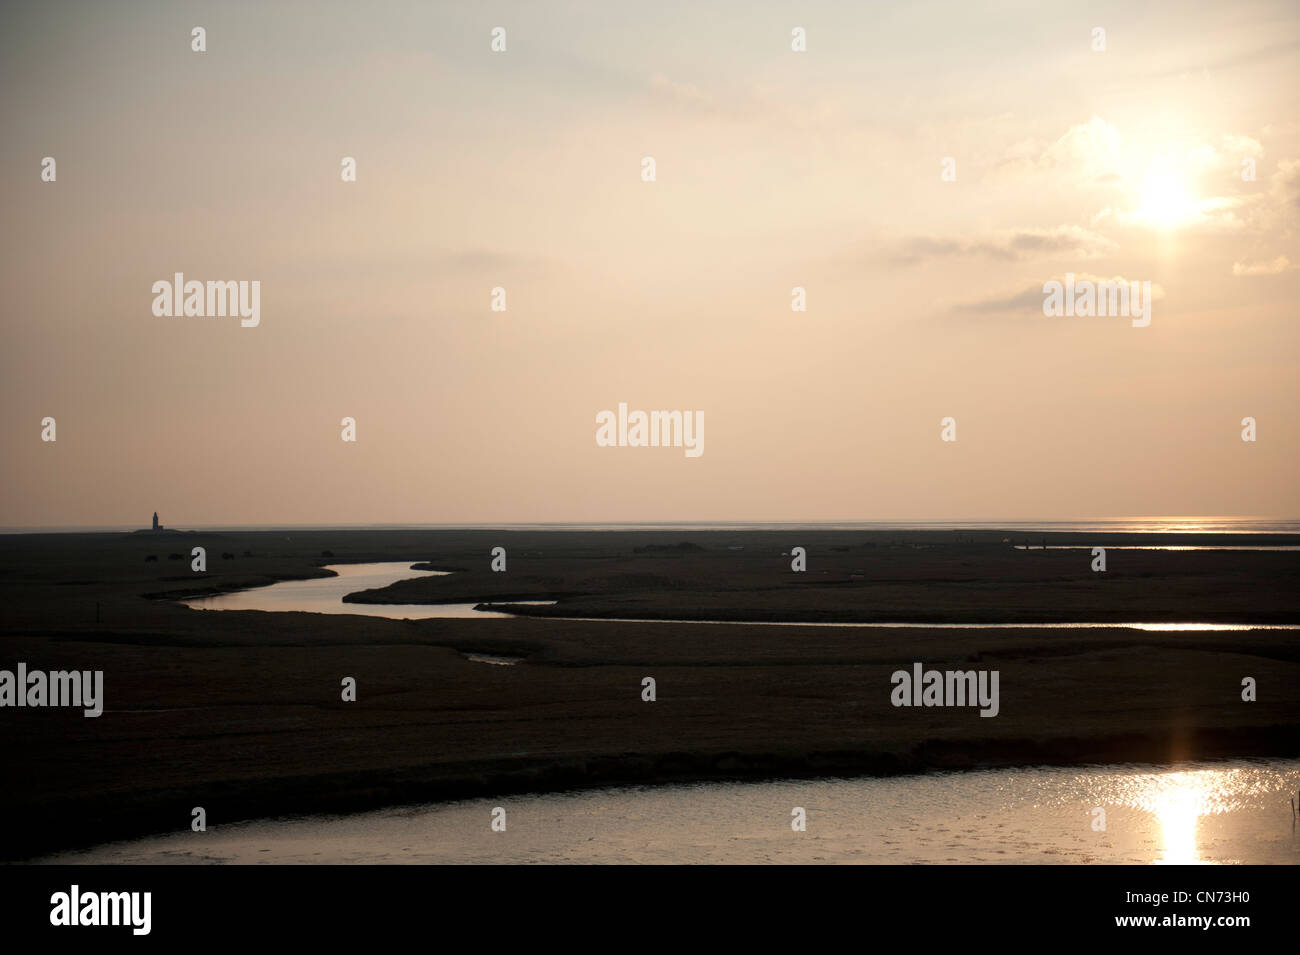 Soleil sur l'île de la mer du Nord Hallig Langeness dans l'UNESCO world heritage area Frise du Nord de la mer des wadden. Banque D'Images